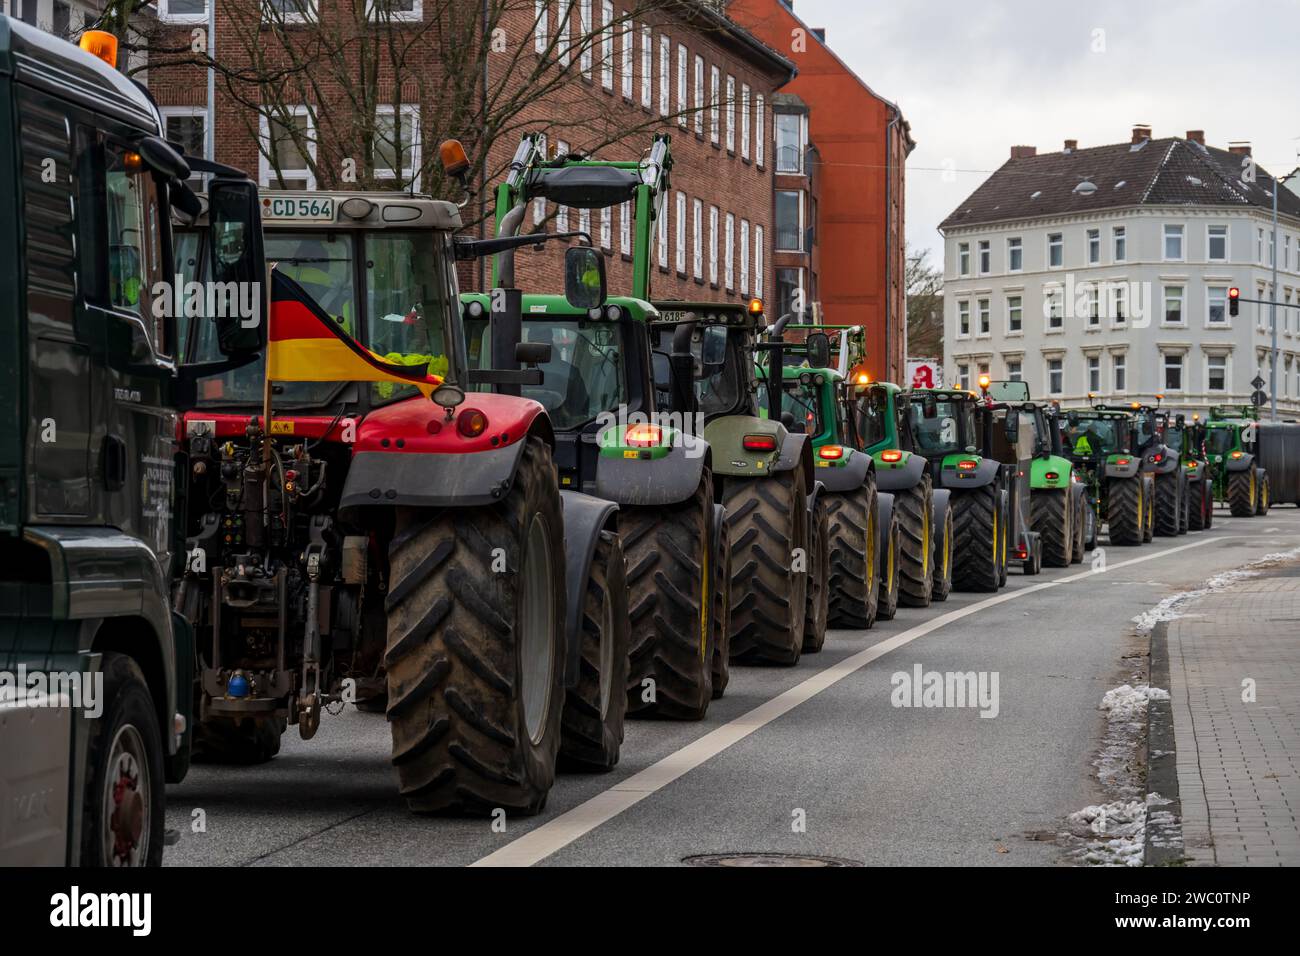 Kiel, 12.01.2023 Protestaktion der Bauern gegen die Streichung von Subventionen der Ampelregierung im Agrarbereich mit einer Traktoren-Demo Foto Stock